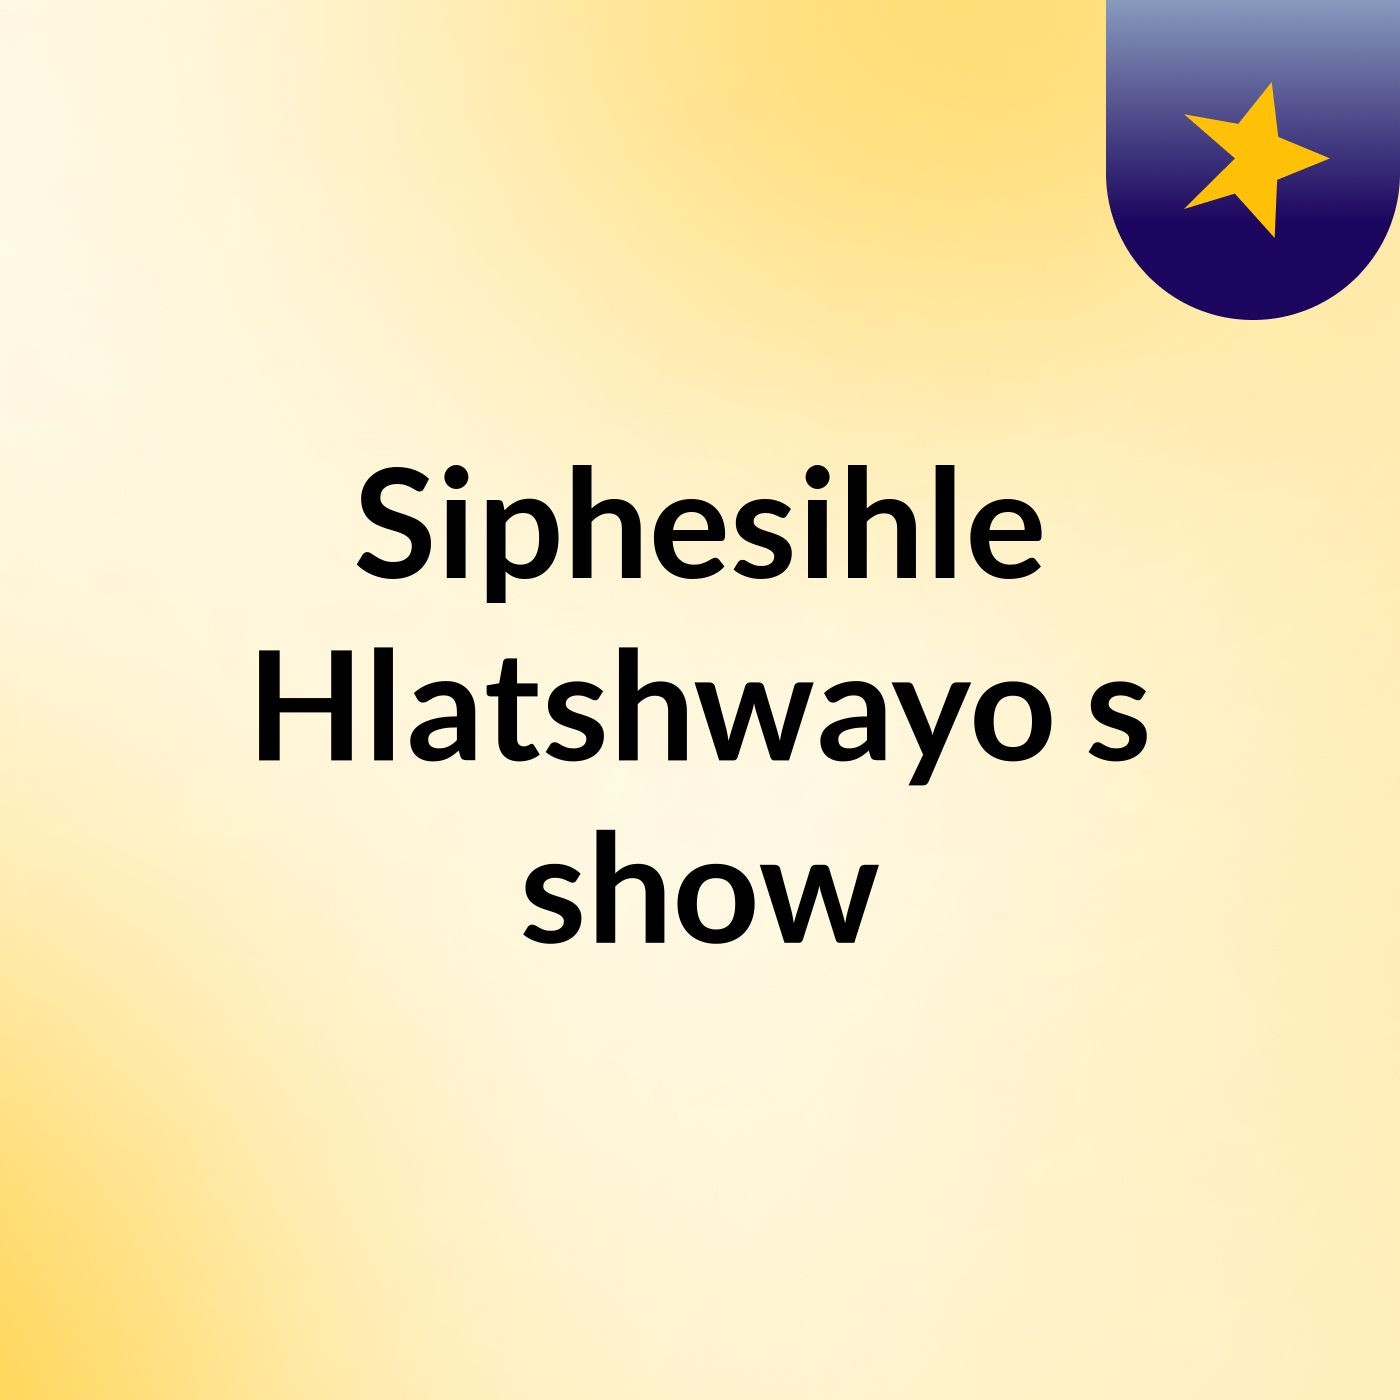 Siphesihle Hlatshwayo's show